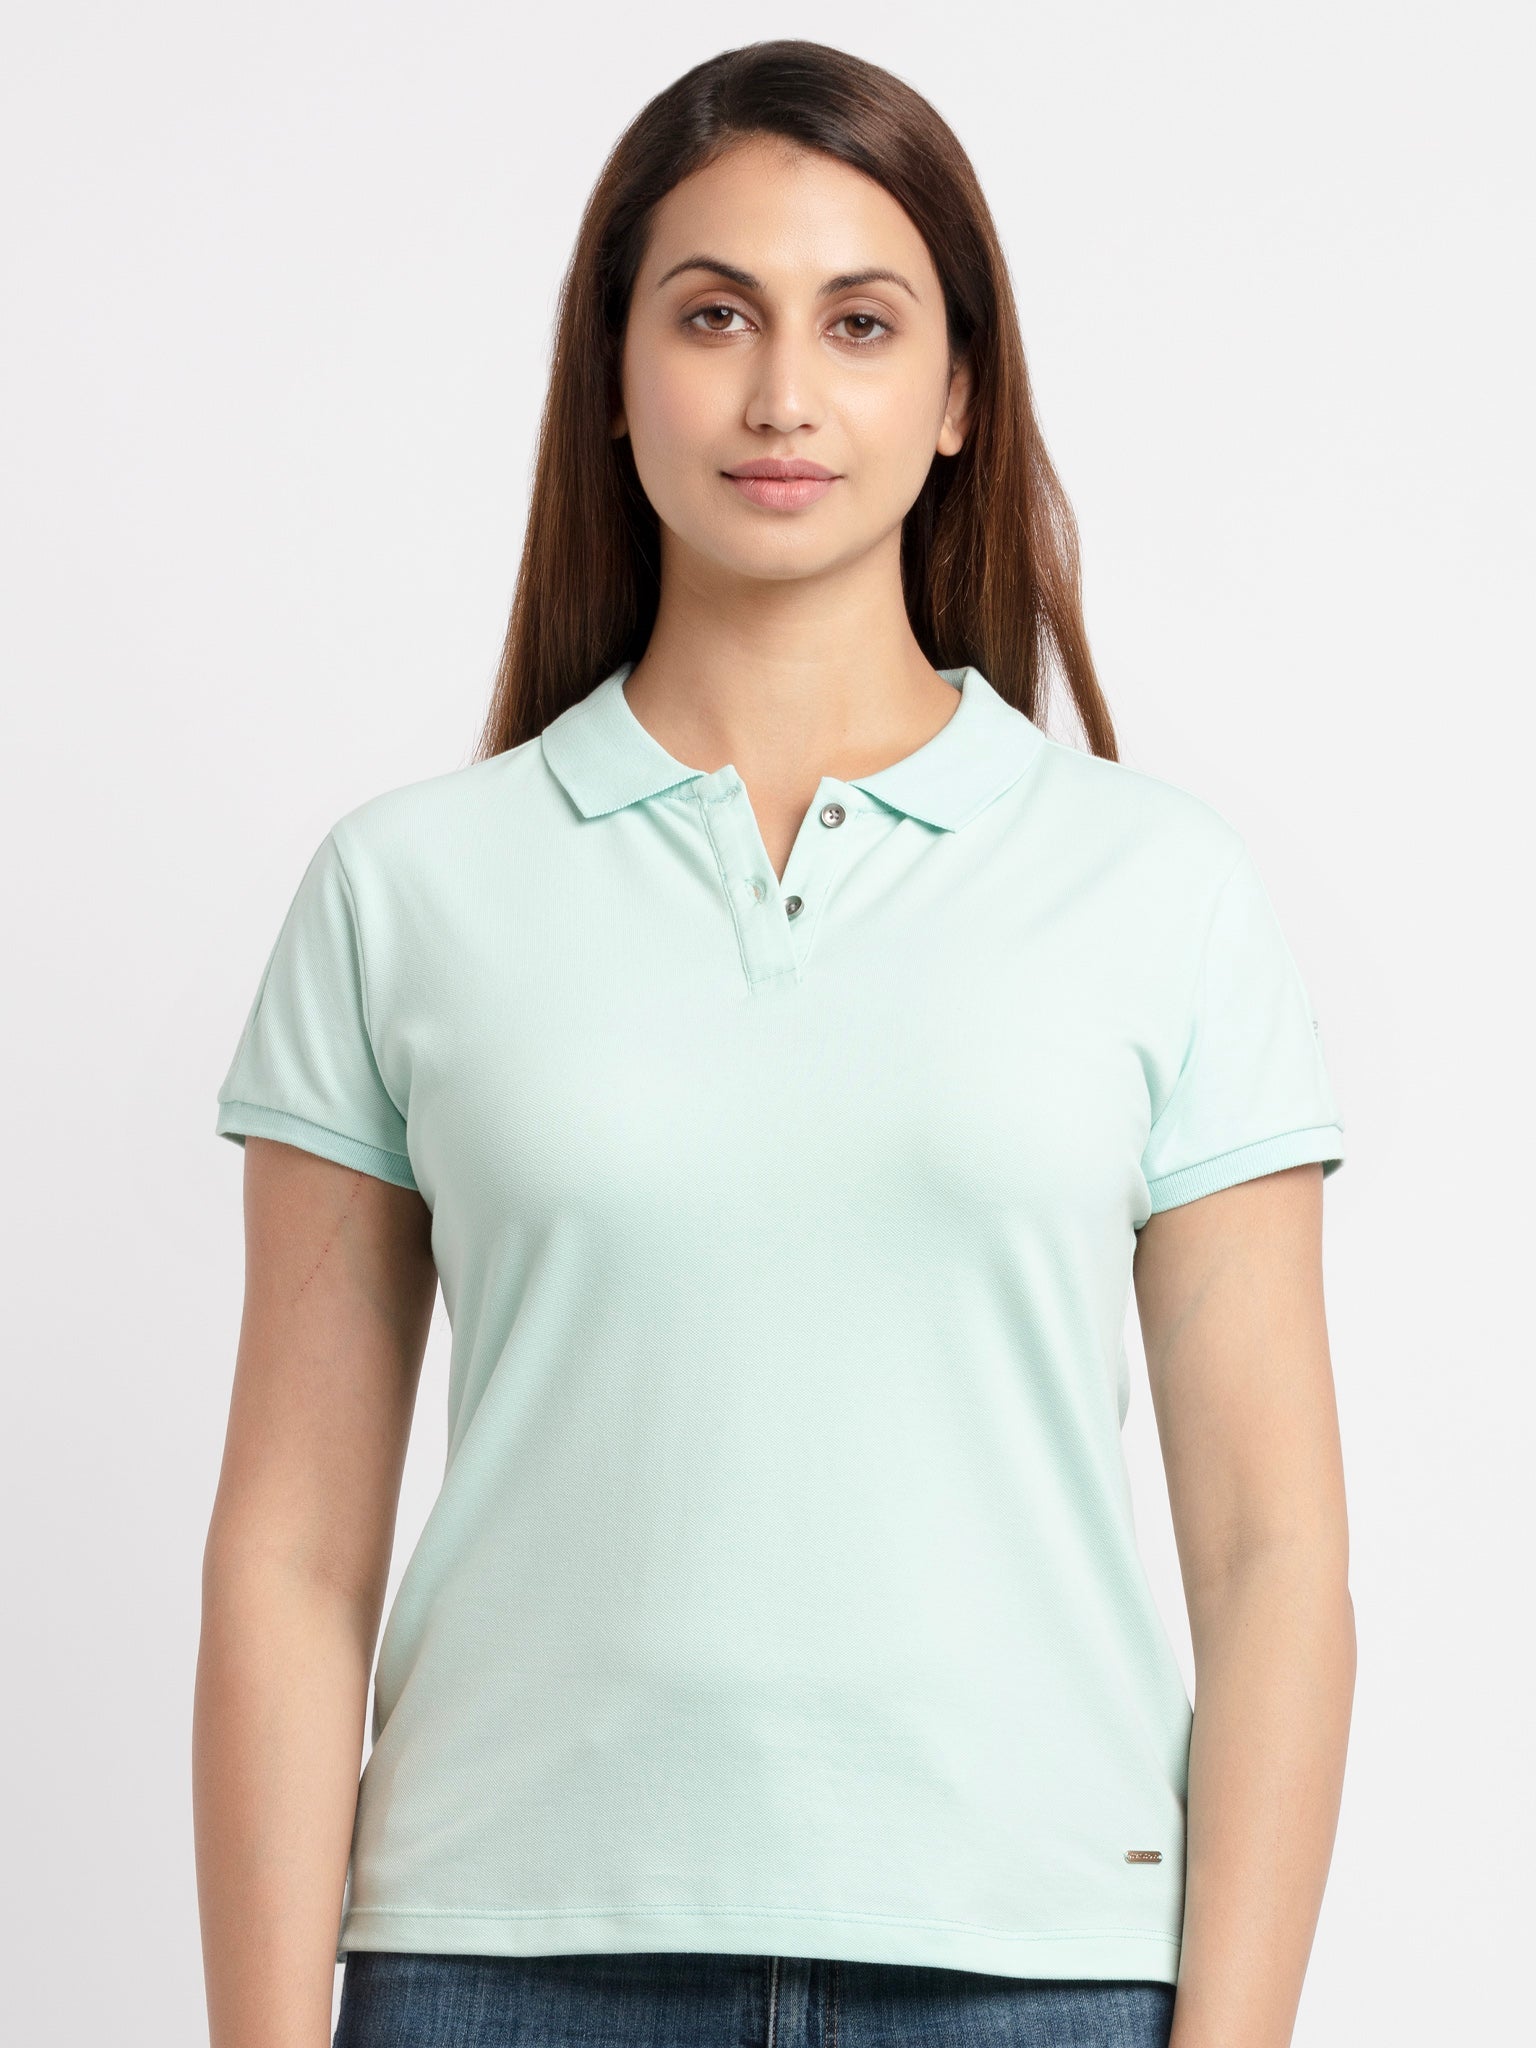 Buy Womens Printed Polo T-Shirt -Status Quo | S, M,  L,  XL,  XXL, 3XL